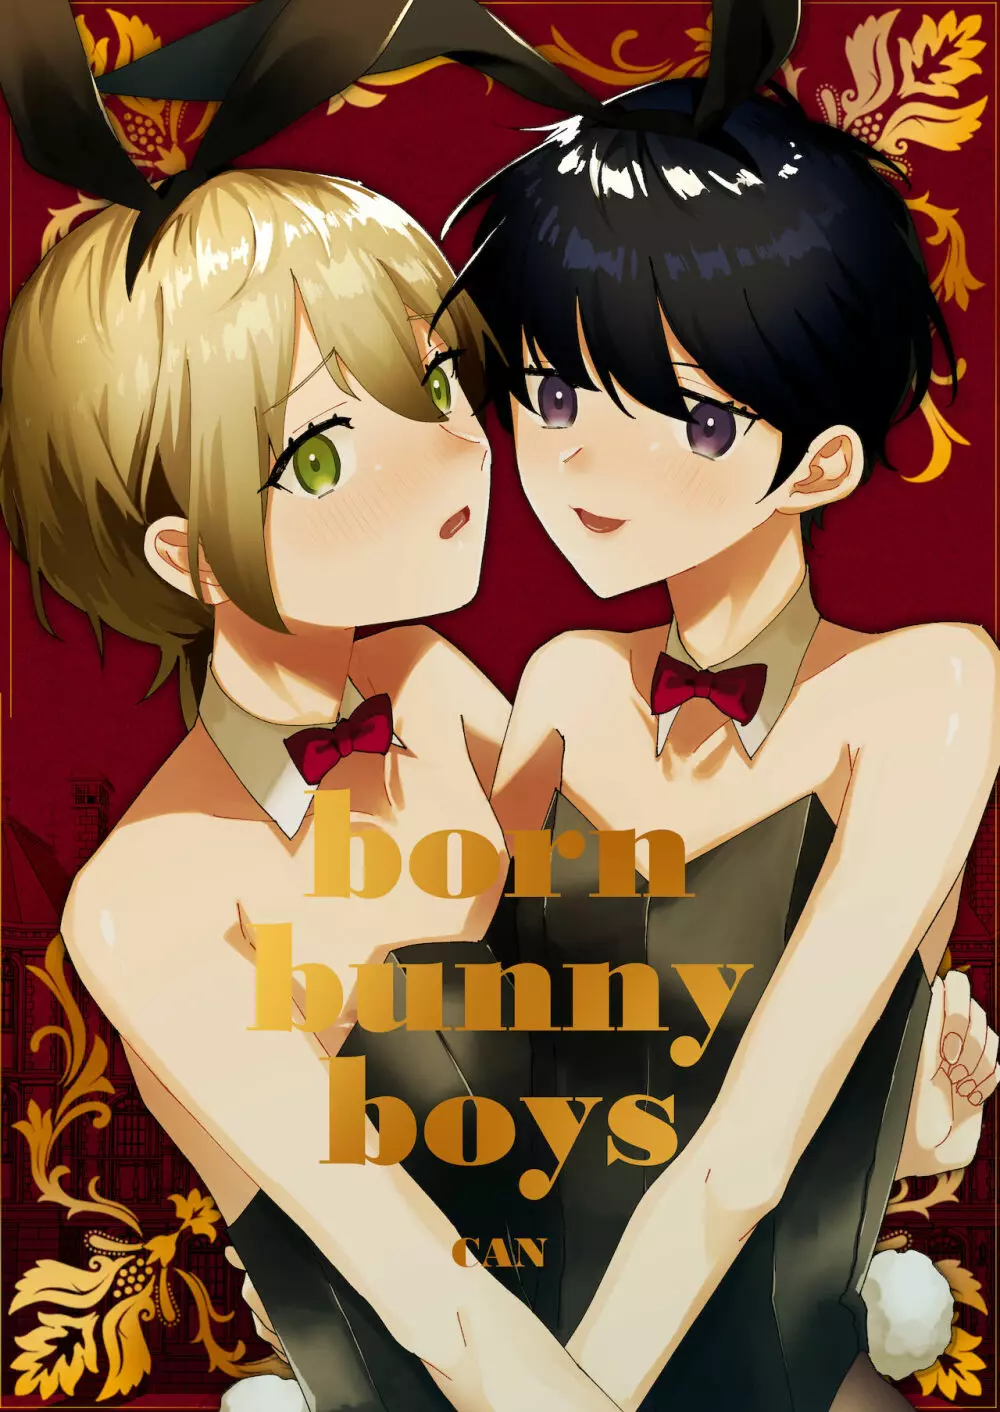 born bunny boys - page1